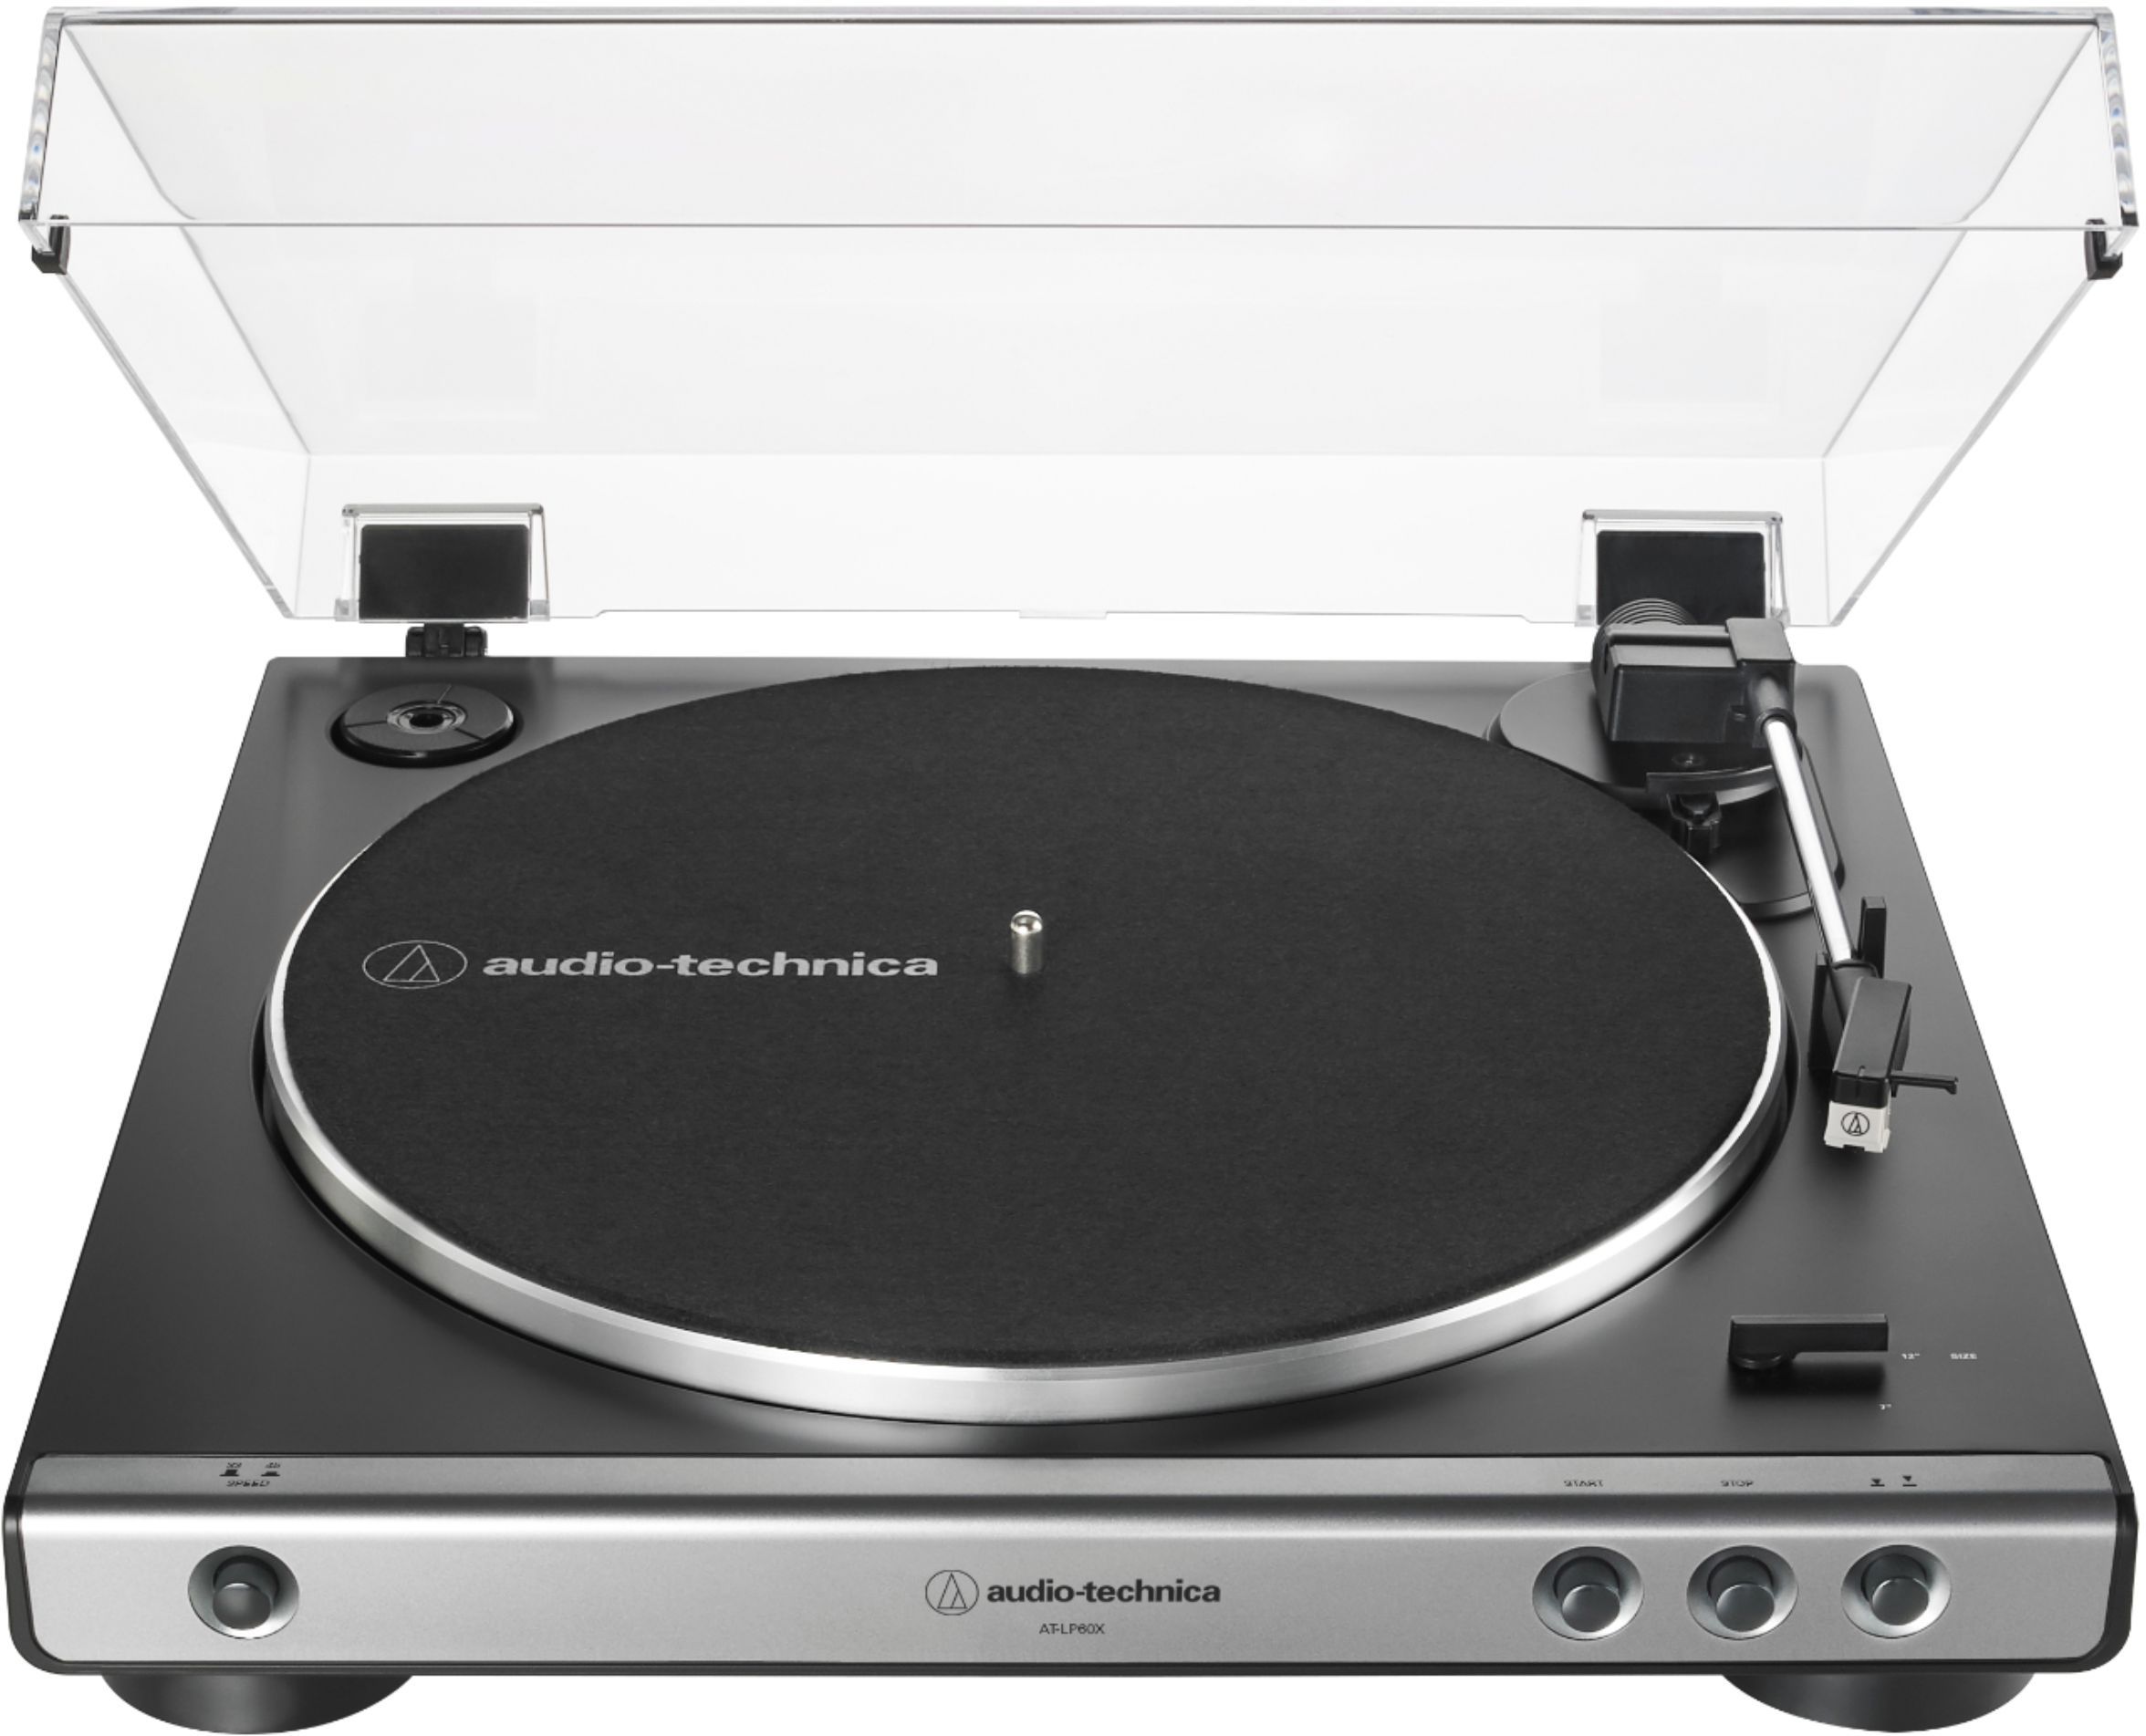 Audio-Technica Stereo Turntable Black/Gunmetal AT-LP60X-GM - Best Buy | Best Buy U.S.